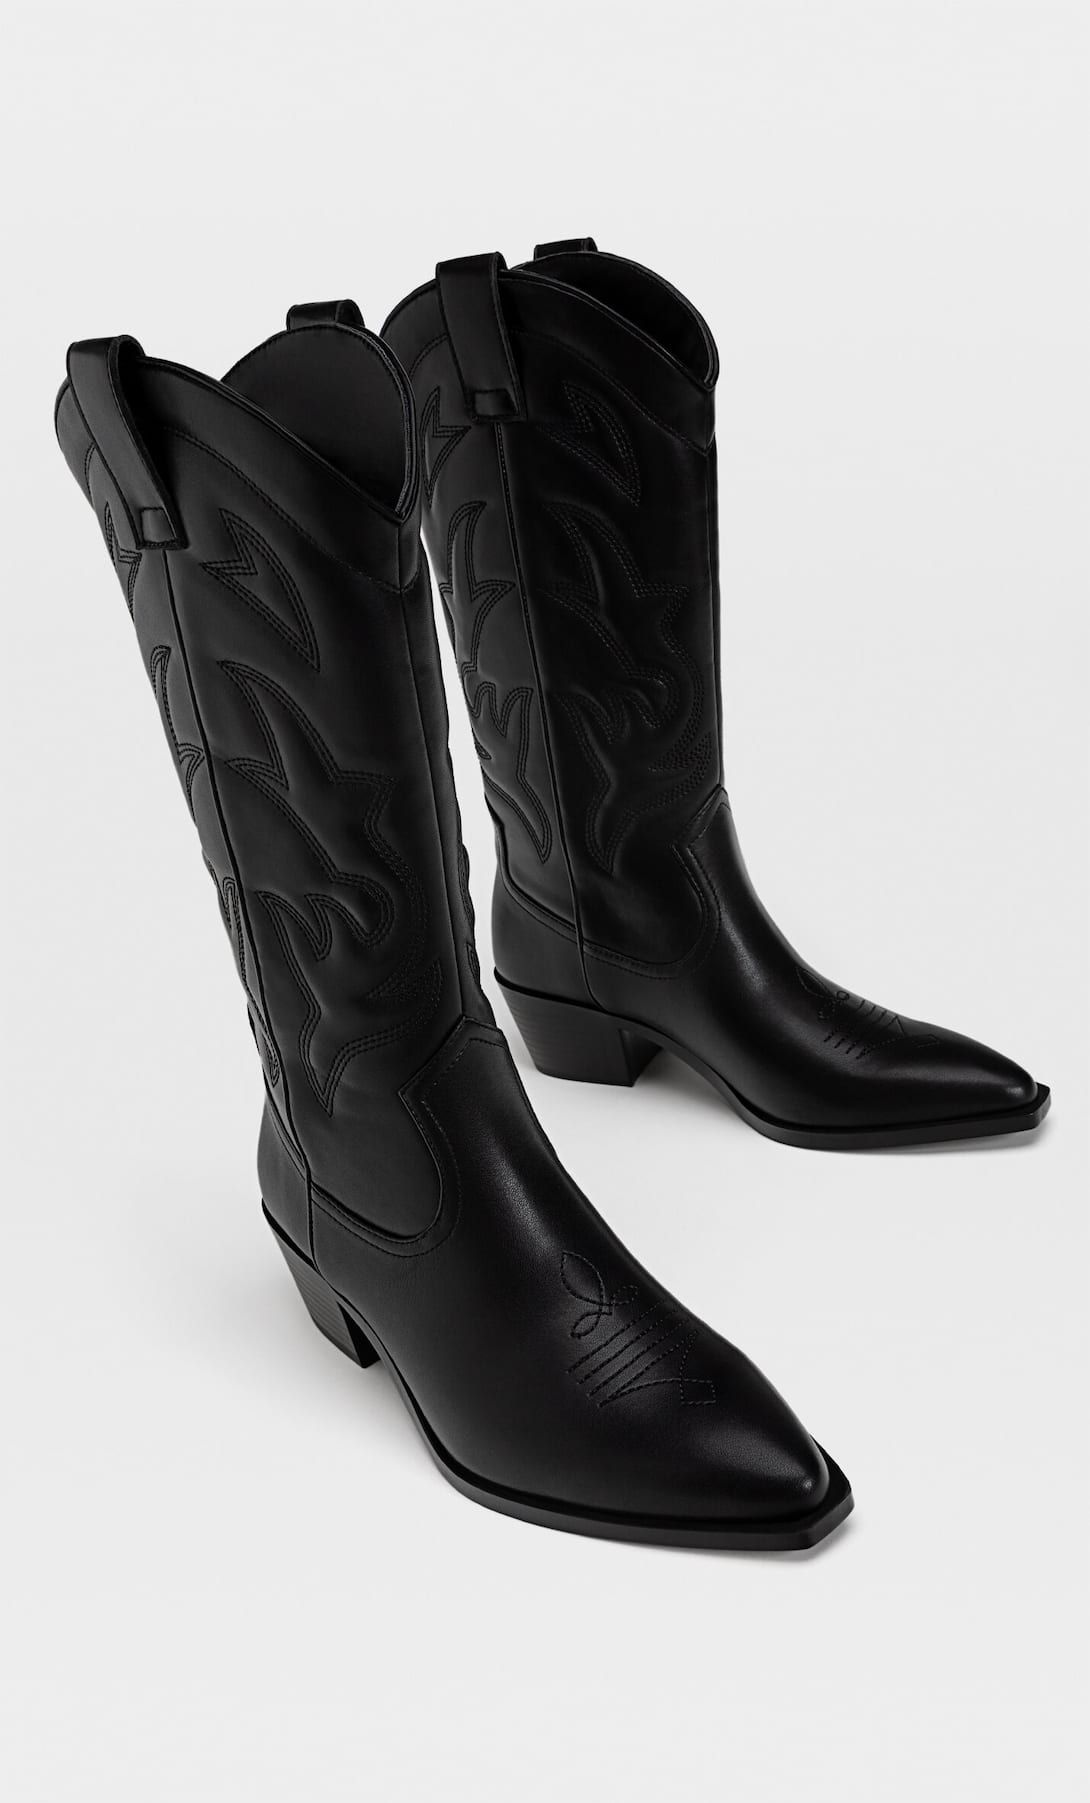 Heeled cowboy boots - Women's fashion | Stradivarius United Kingdom | Stradivarius (UK)